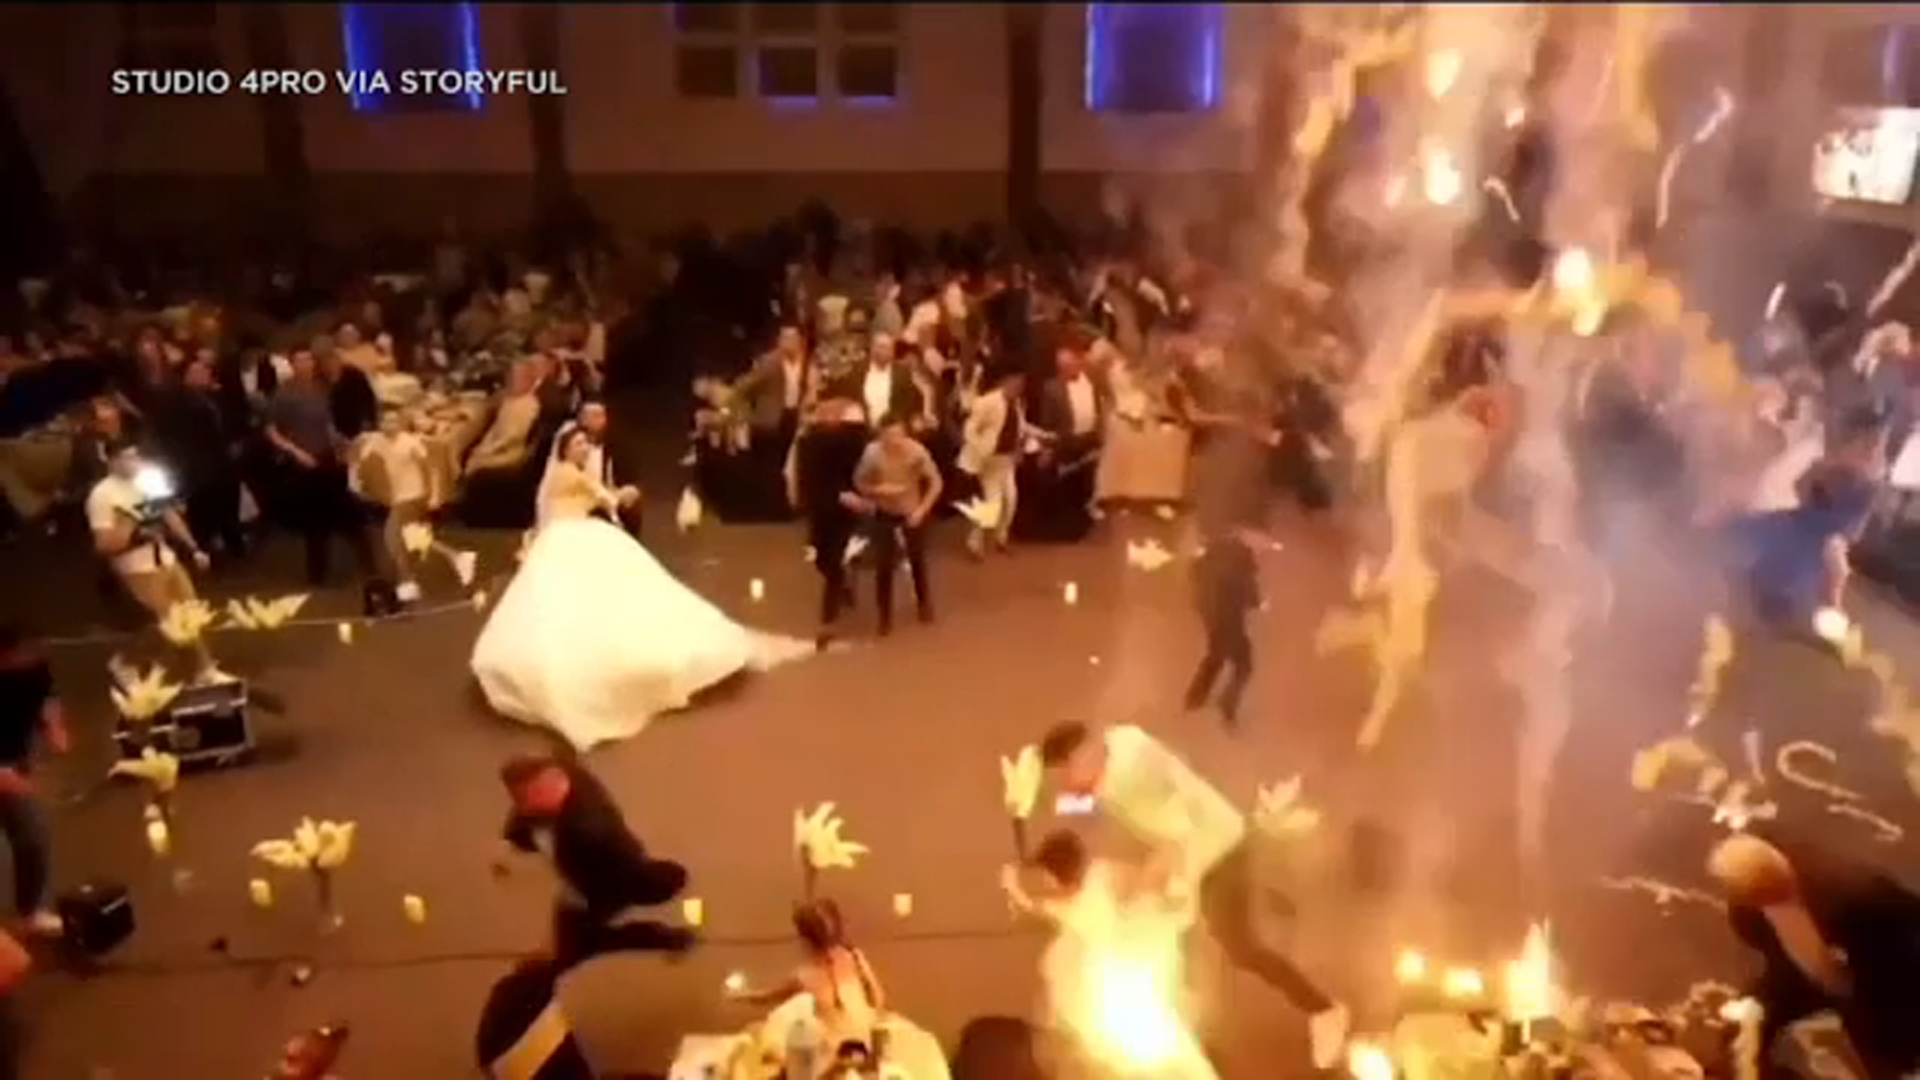 Đang đám cưới thì lửa bốc lên khiến 314 người thương vong, cô dâu chú rể ra đi: Nhân chứng kể giây phút kinh hoàng - ảnh 1